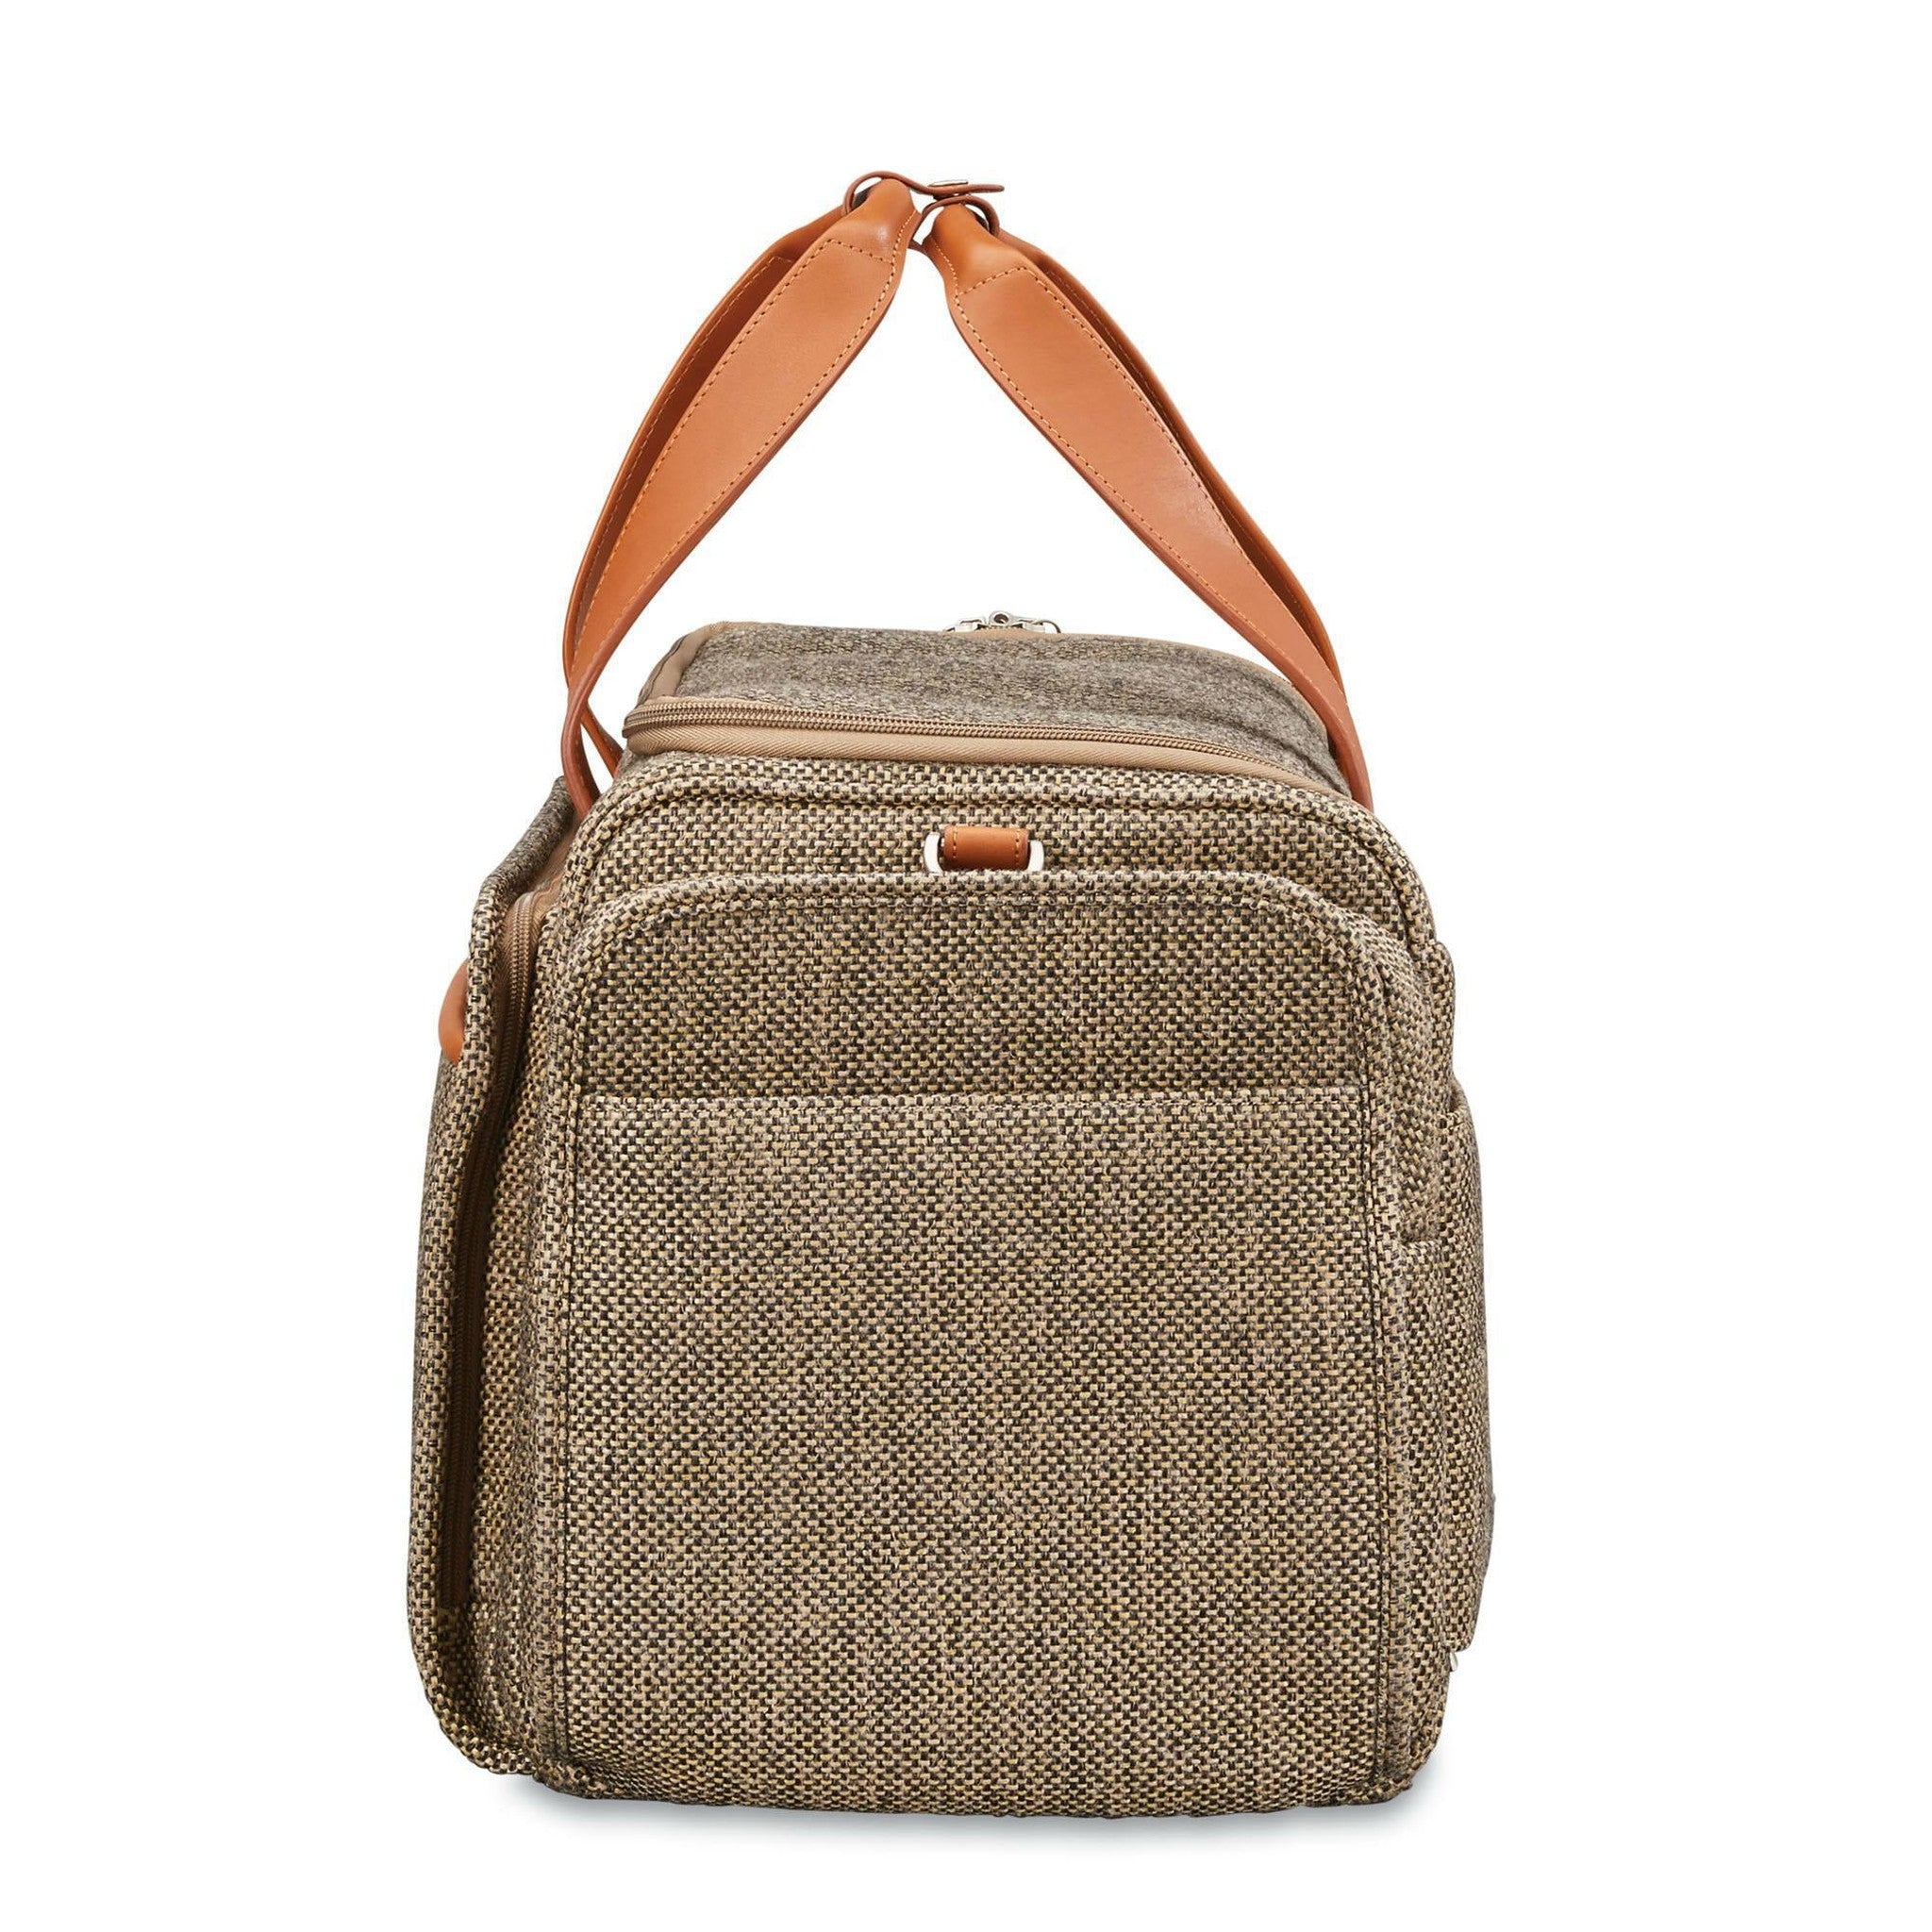 Vintage Hartmann Belting Leather and Tweed Overnight Bag/Satchel/Travel Bag